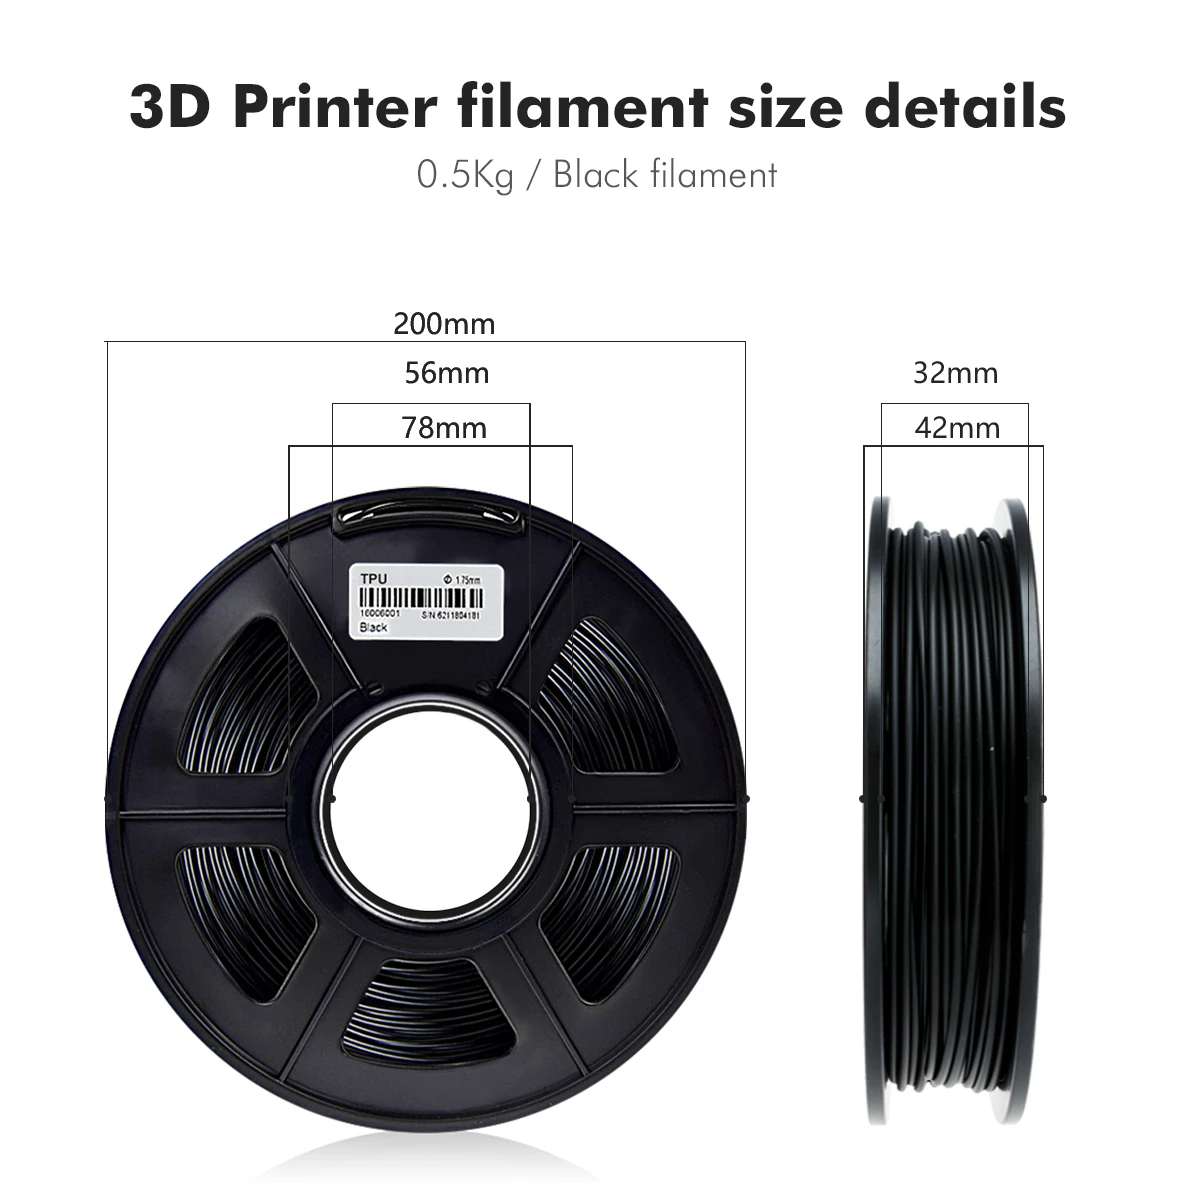 SUNLU TPU Imprimanta 3D Filament Filament Flexibil Negru 1,75 mm 0.5 kg(1.1 LB) Precizie Dimensională +/- 0.02 MM Tpu Caz de Material 5